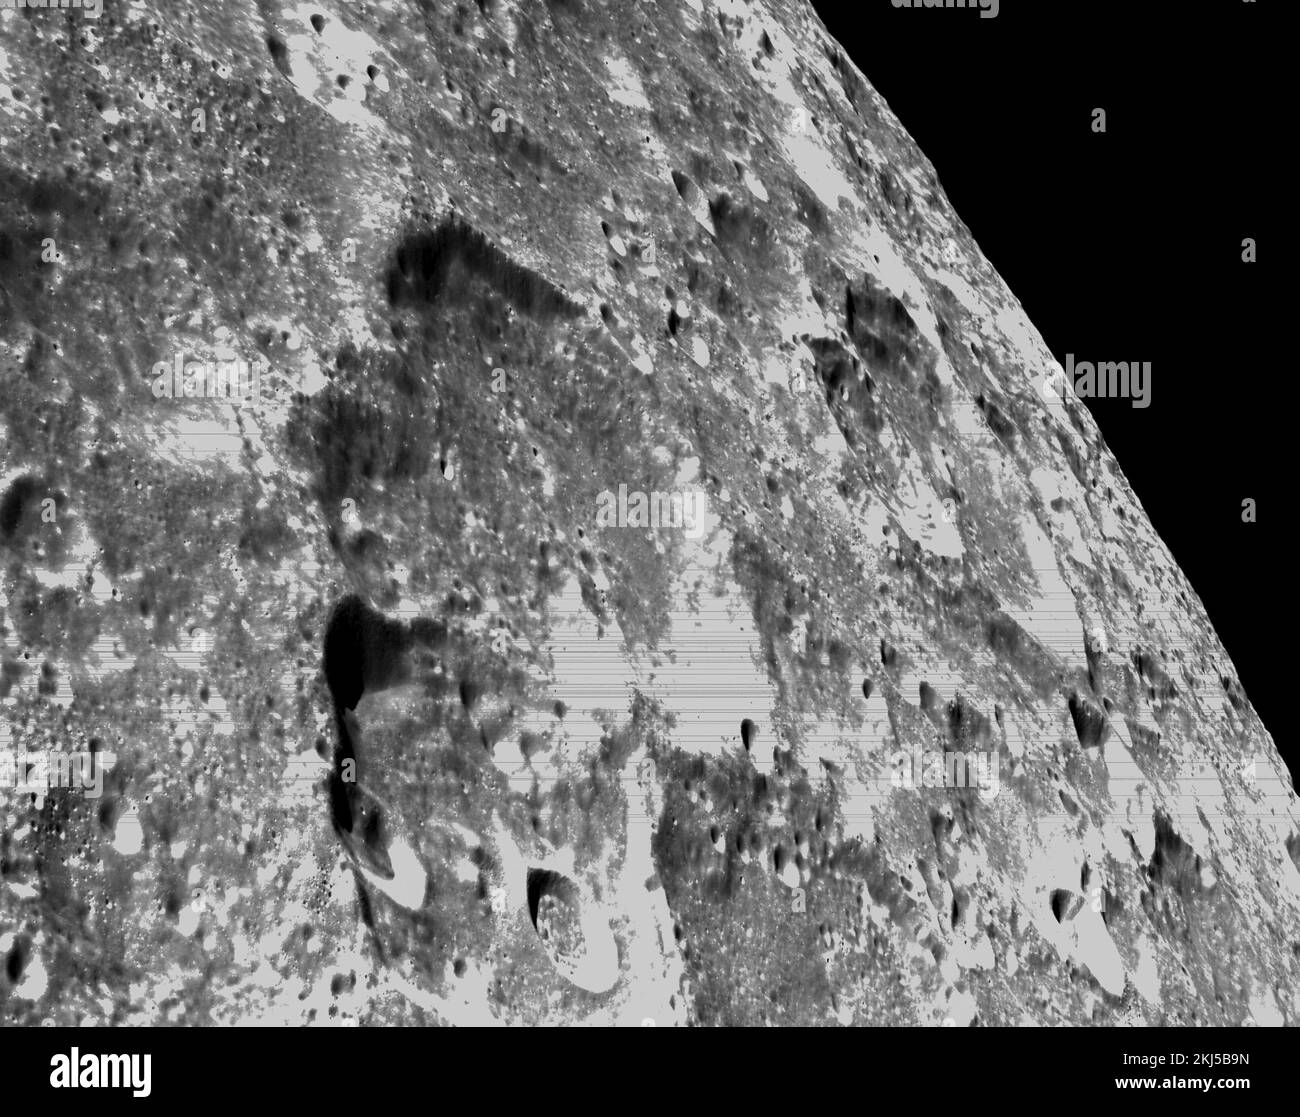 Órbita lunar, órbita terrestre. 21 de noviembre de 2022. Imágenes en blanco y negro de la superficie lunar mostrando cráteres capturados por la cámara óptica de navegación Orion durante el acercamiento más cercano a la Luna en el vuelo del sexto día de la misión Artemis I de la NASA, el 21 de noviembre de 2022, en órbita lunar. Crédito: NASA/NASA/Alamy Live News Foto de stock